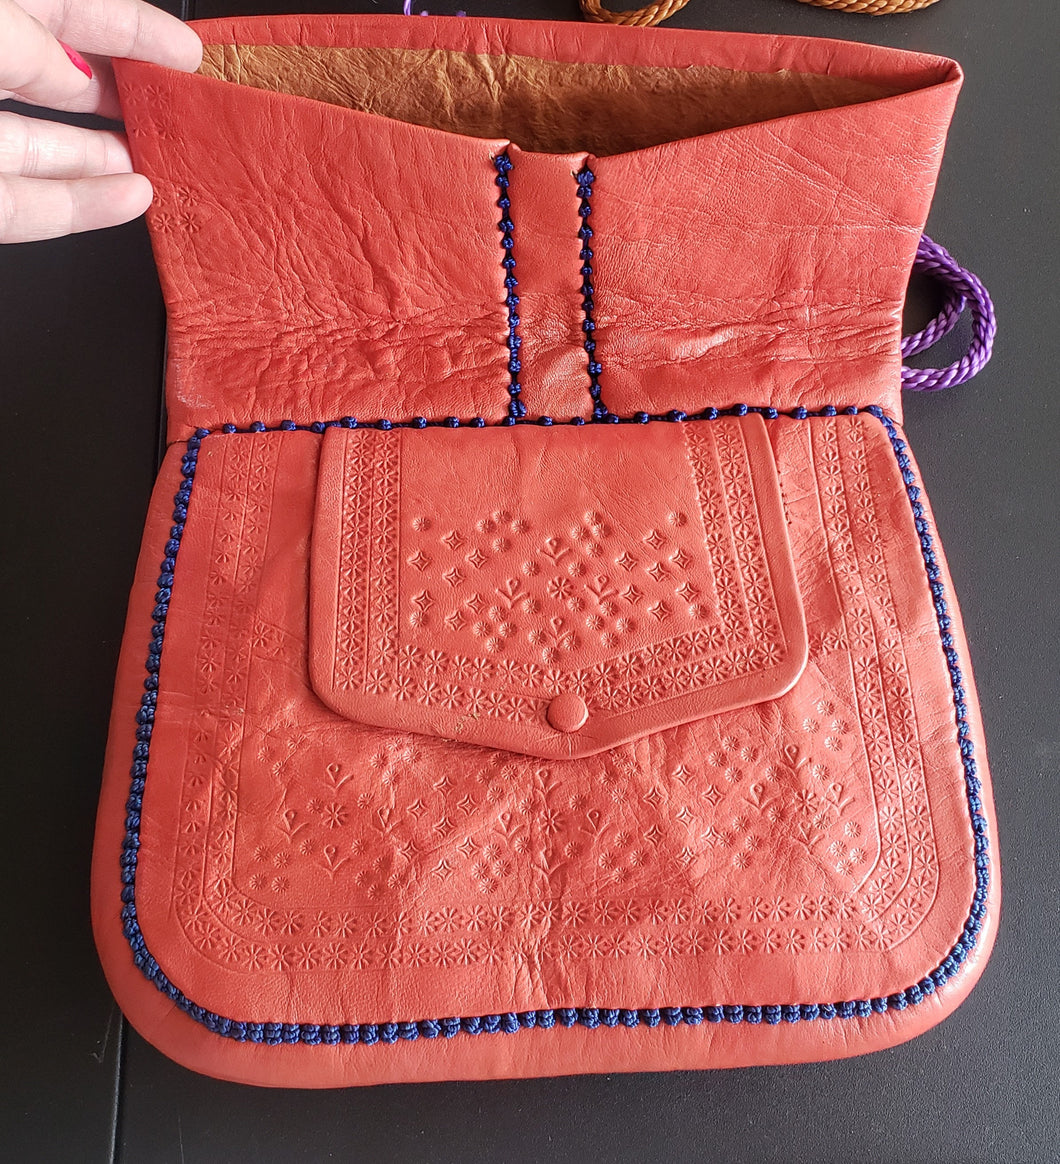 Vintage Berber leather bag, Morocco, cactus silk? orange purple embroidery, handmade, Boho, Vintage Leather Bag travel bag,Messenger Bag